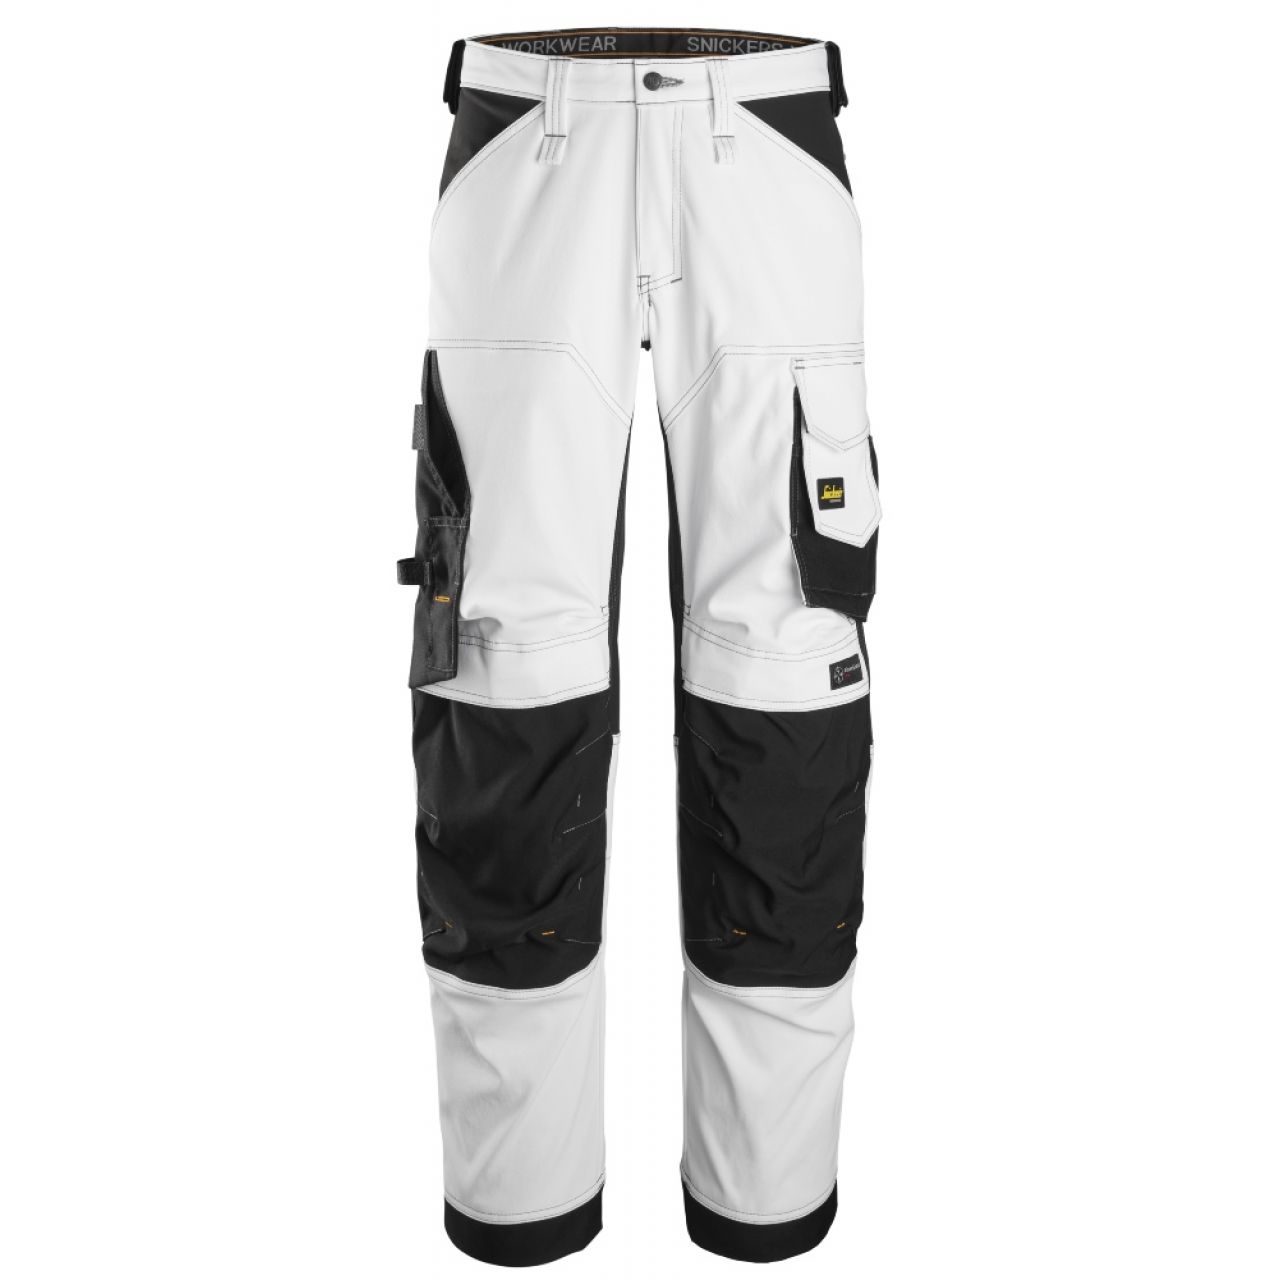 6351 Pantalones largos de trabajo elásticos de ajuste holgado AllroundWork blanco-negro talla 58